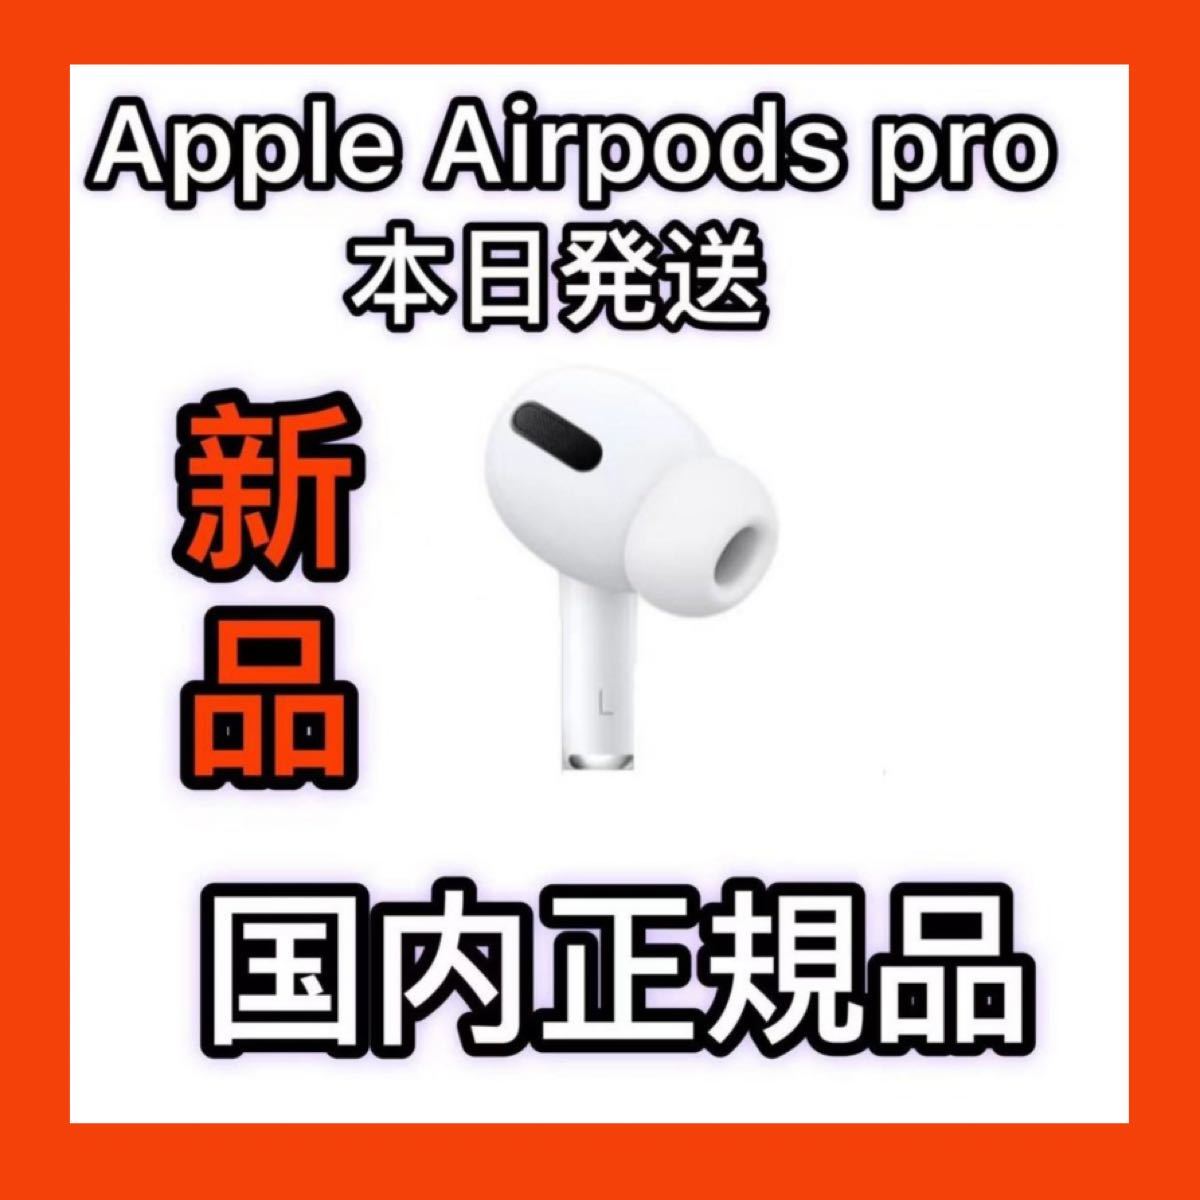 オーディオ機器 イヤフォン Apple純正品 エアーポッズプロ 左耳のみ AirPods Pro 新品｜PayPayフリマ